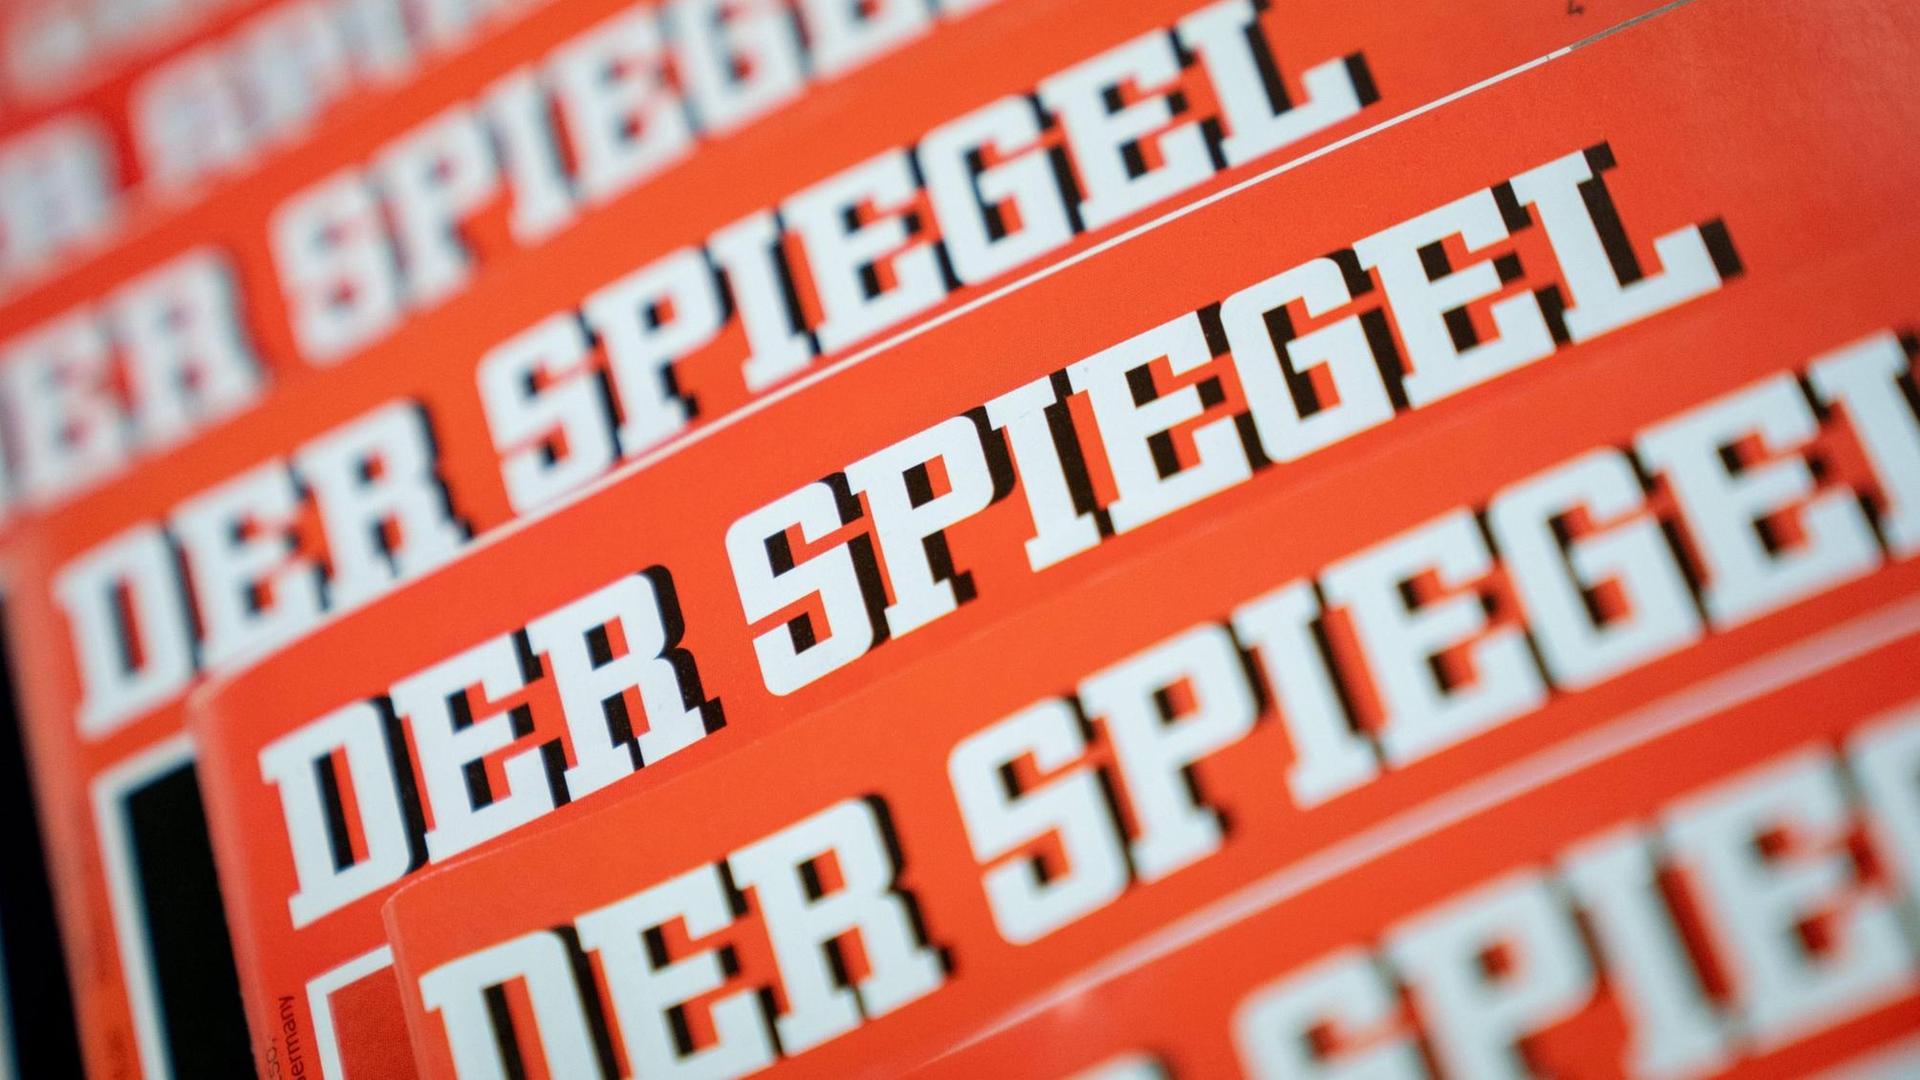 Das Bild zeigt viele Ausgaben des Magazins "Der Spiegel".